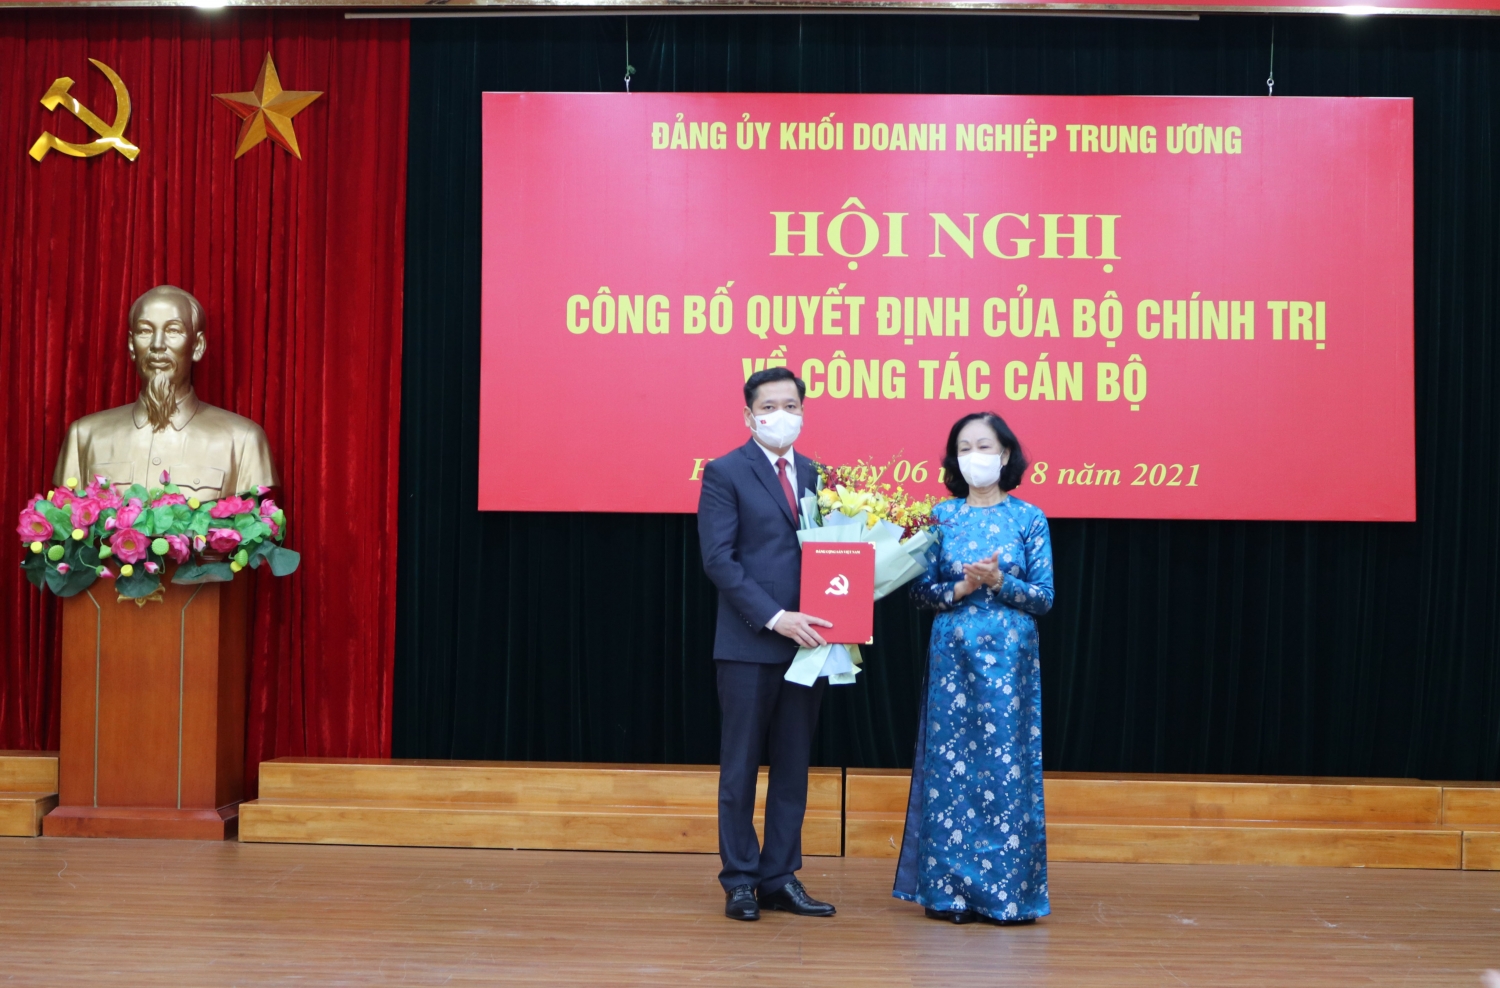 Đồng chí Nguyễn Long Hải giữ chức Bí thư Đảng uỷ Khối Doanh nghiệp Trung ương